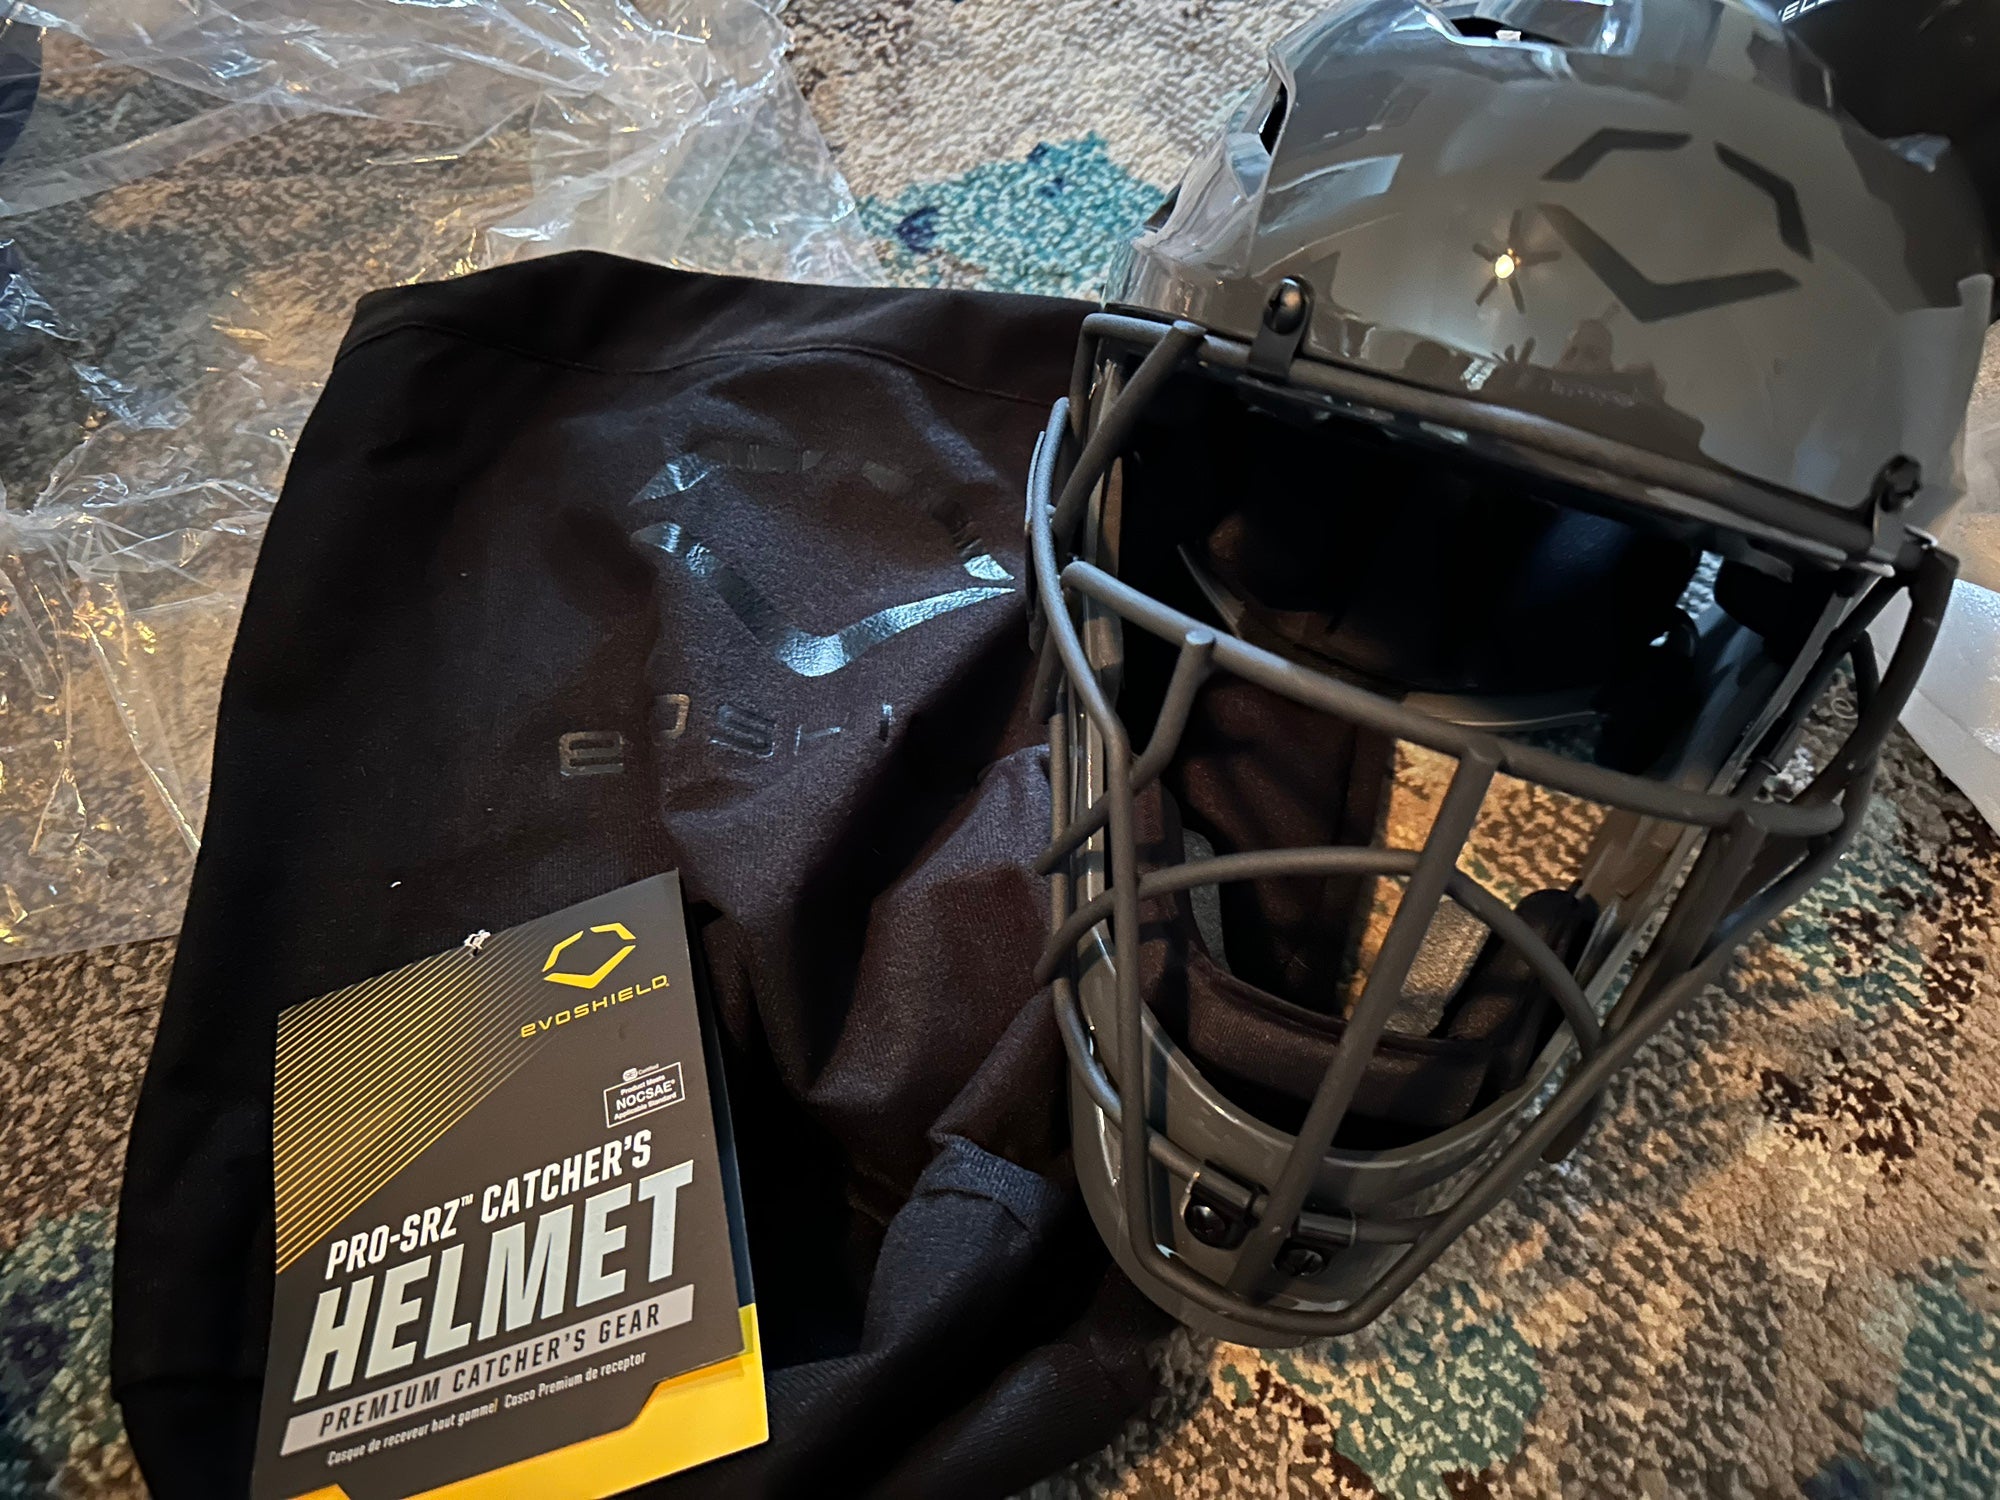  EvoShield Pro-Srz™ Catcher's Helmet - Black, Small